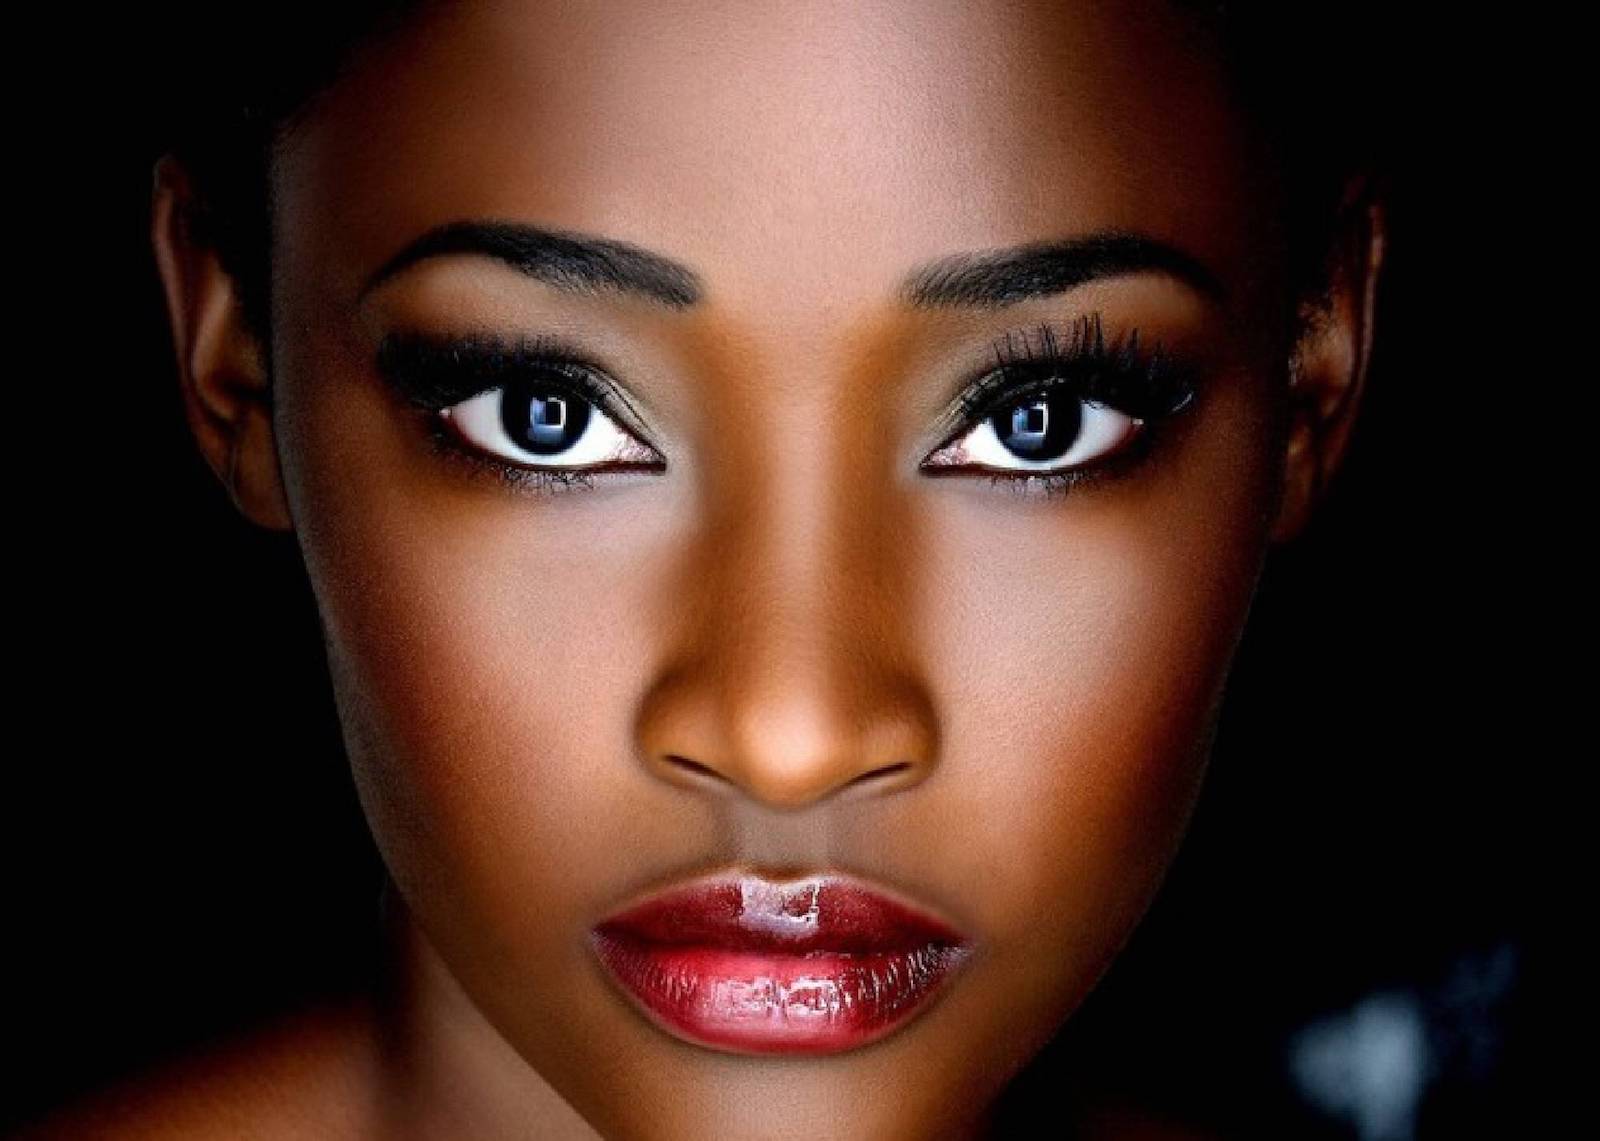 Ebony beauty and skin